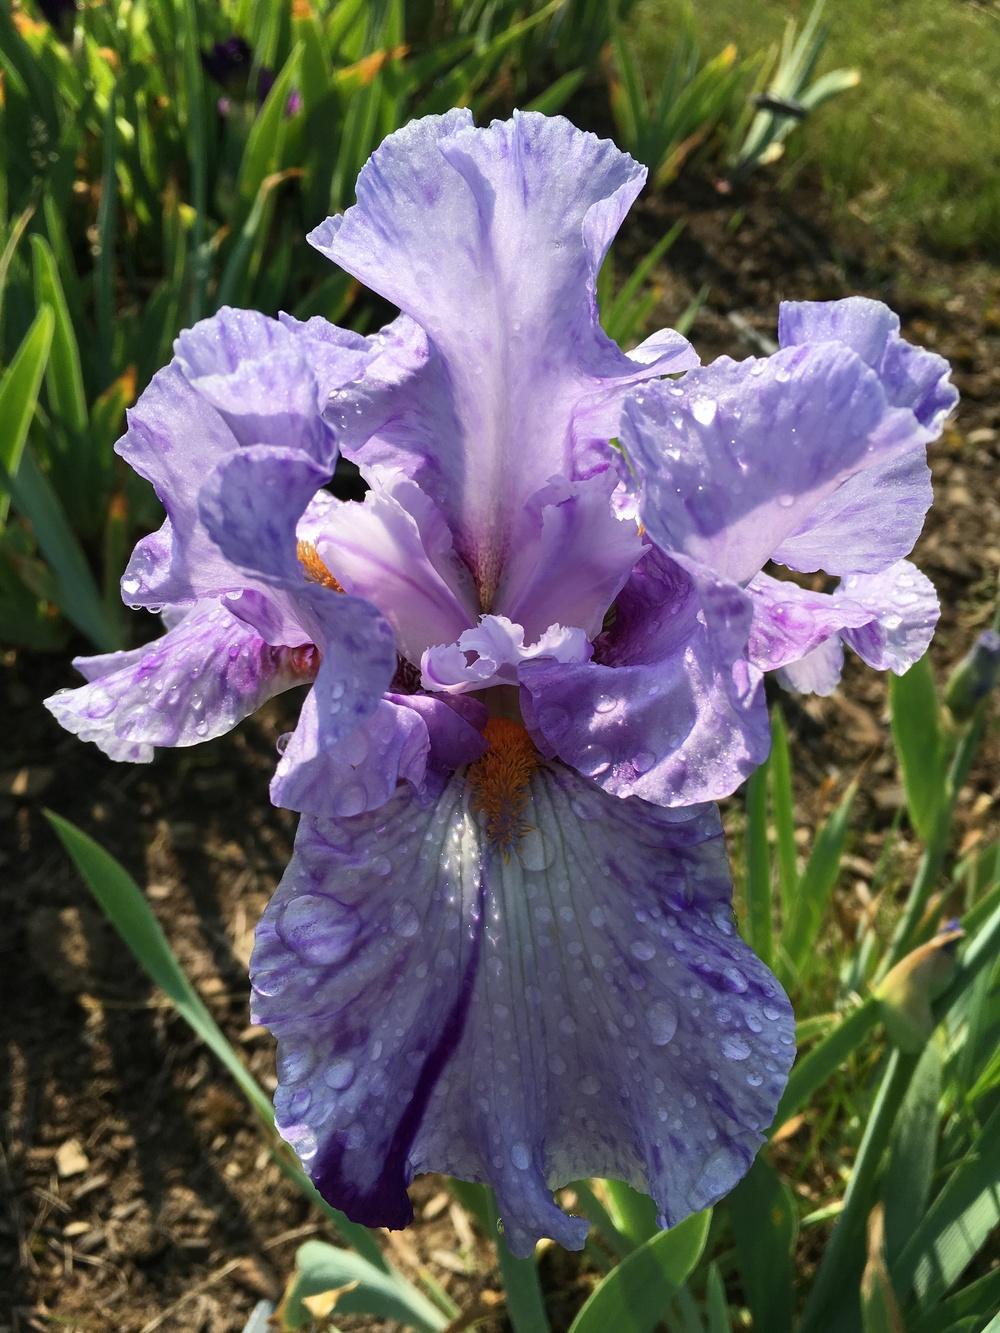 Photo of Tall Bearded Iris (Iris 'Elainealope') uploaded by Misawa77